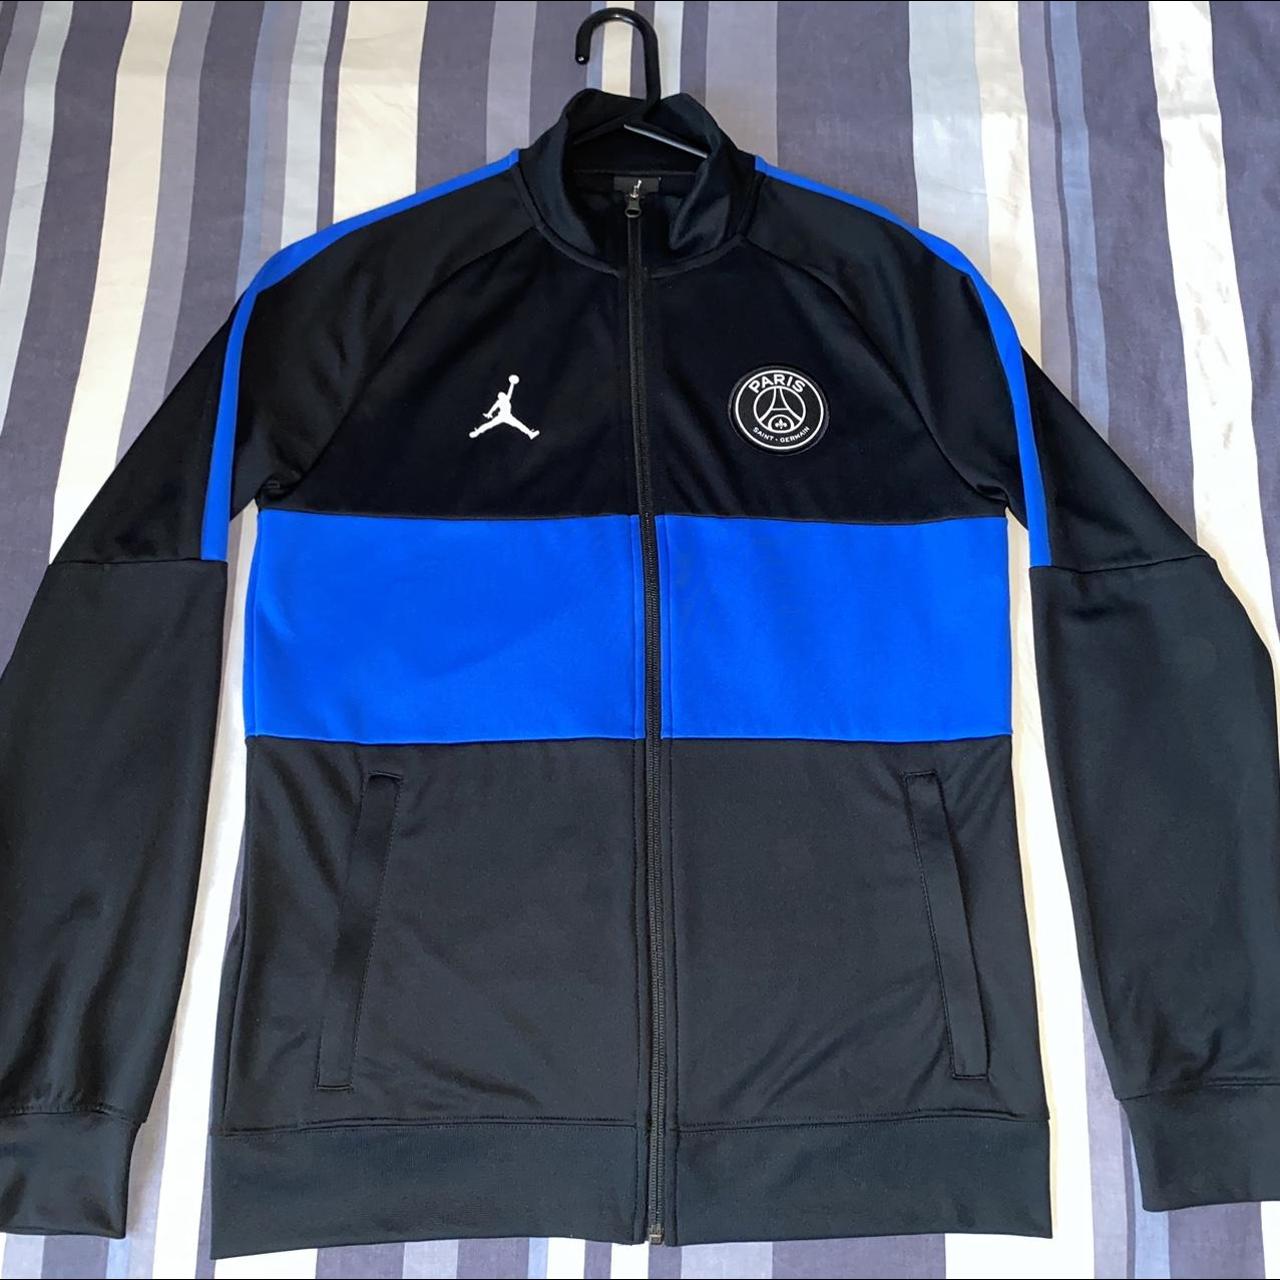 Nike Men's Black and Blue Jacket | Depop